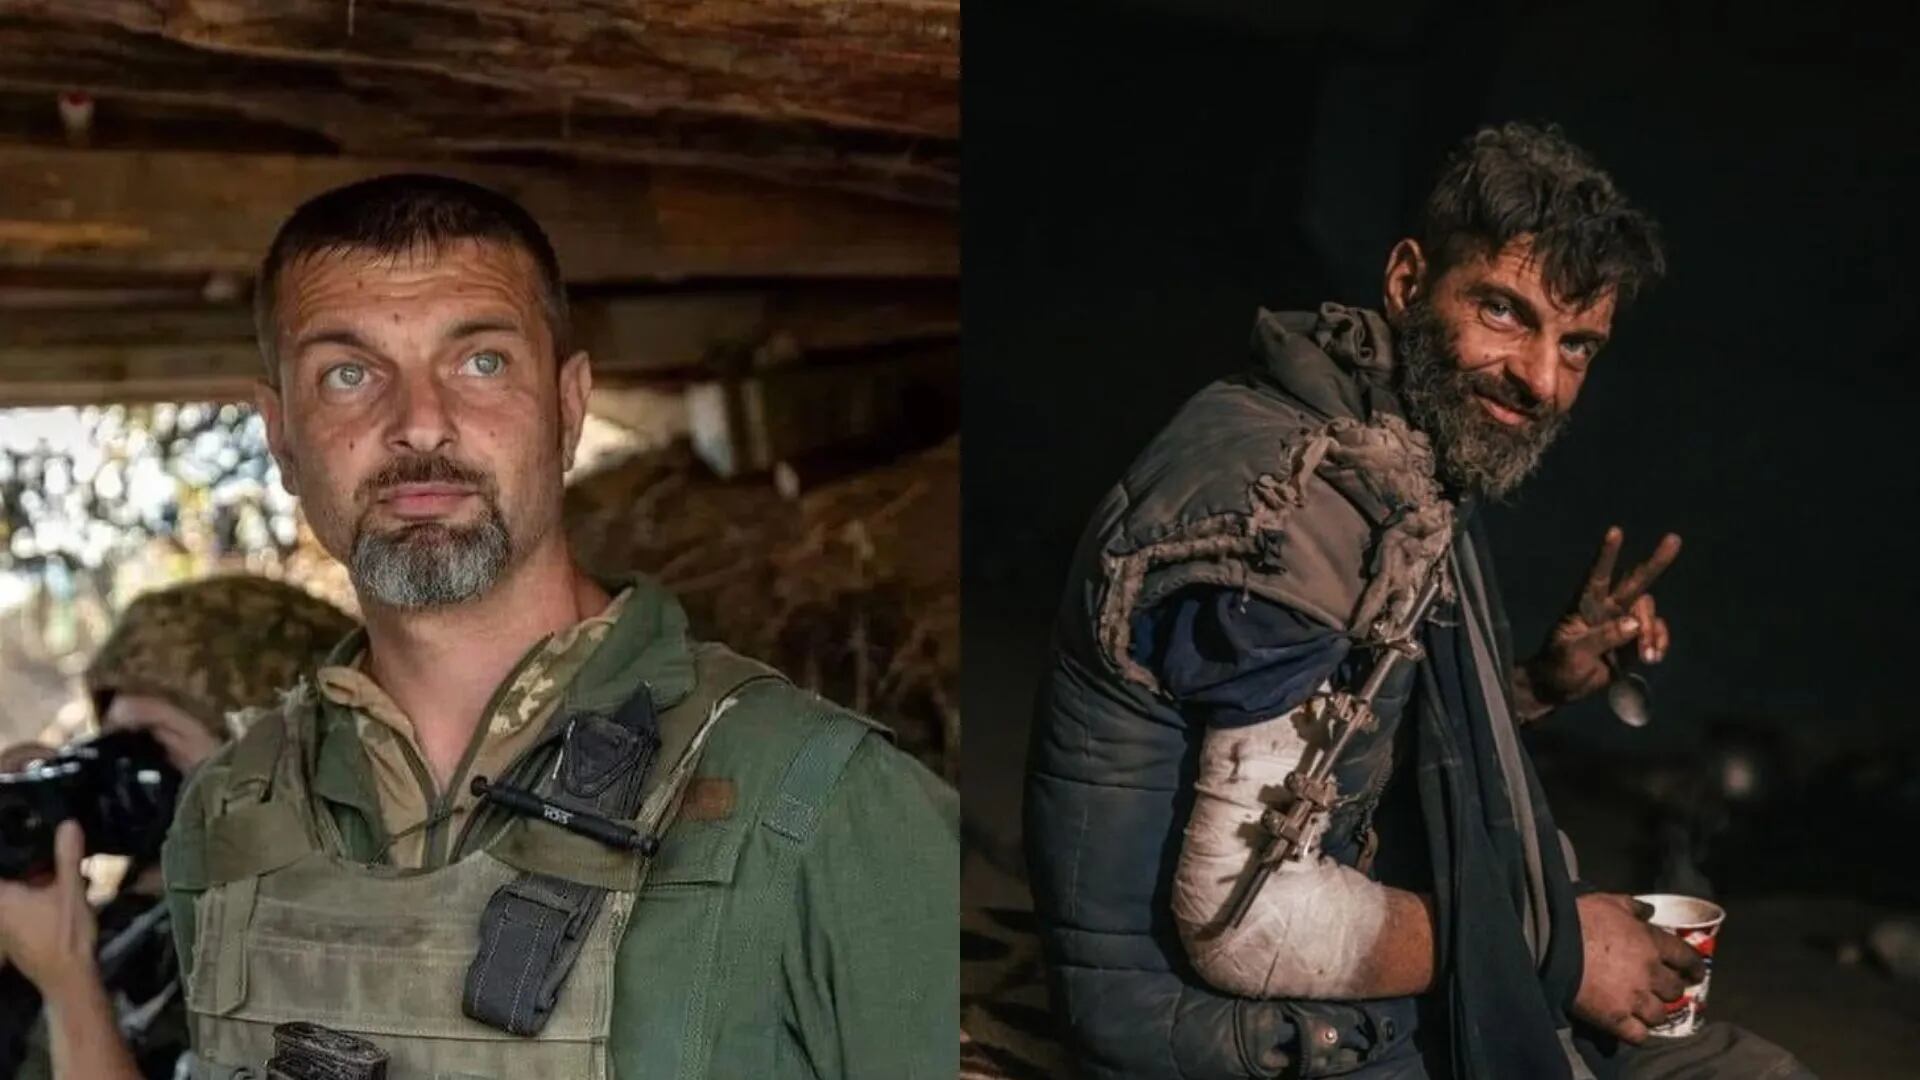 El escalofriante antes y después de un soldado ucraniano que sobrevivió al cautiverio ruso: “Hay mucho por hacer”